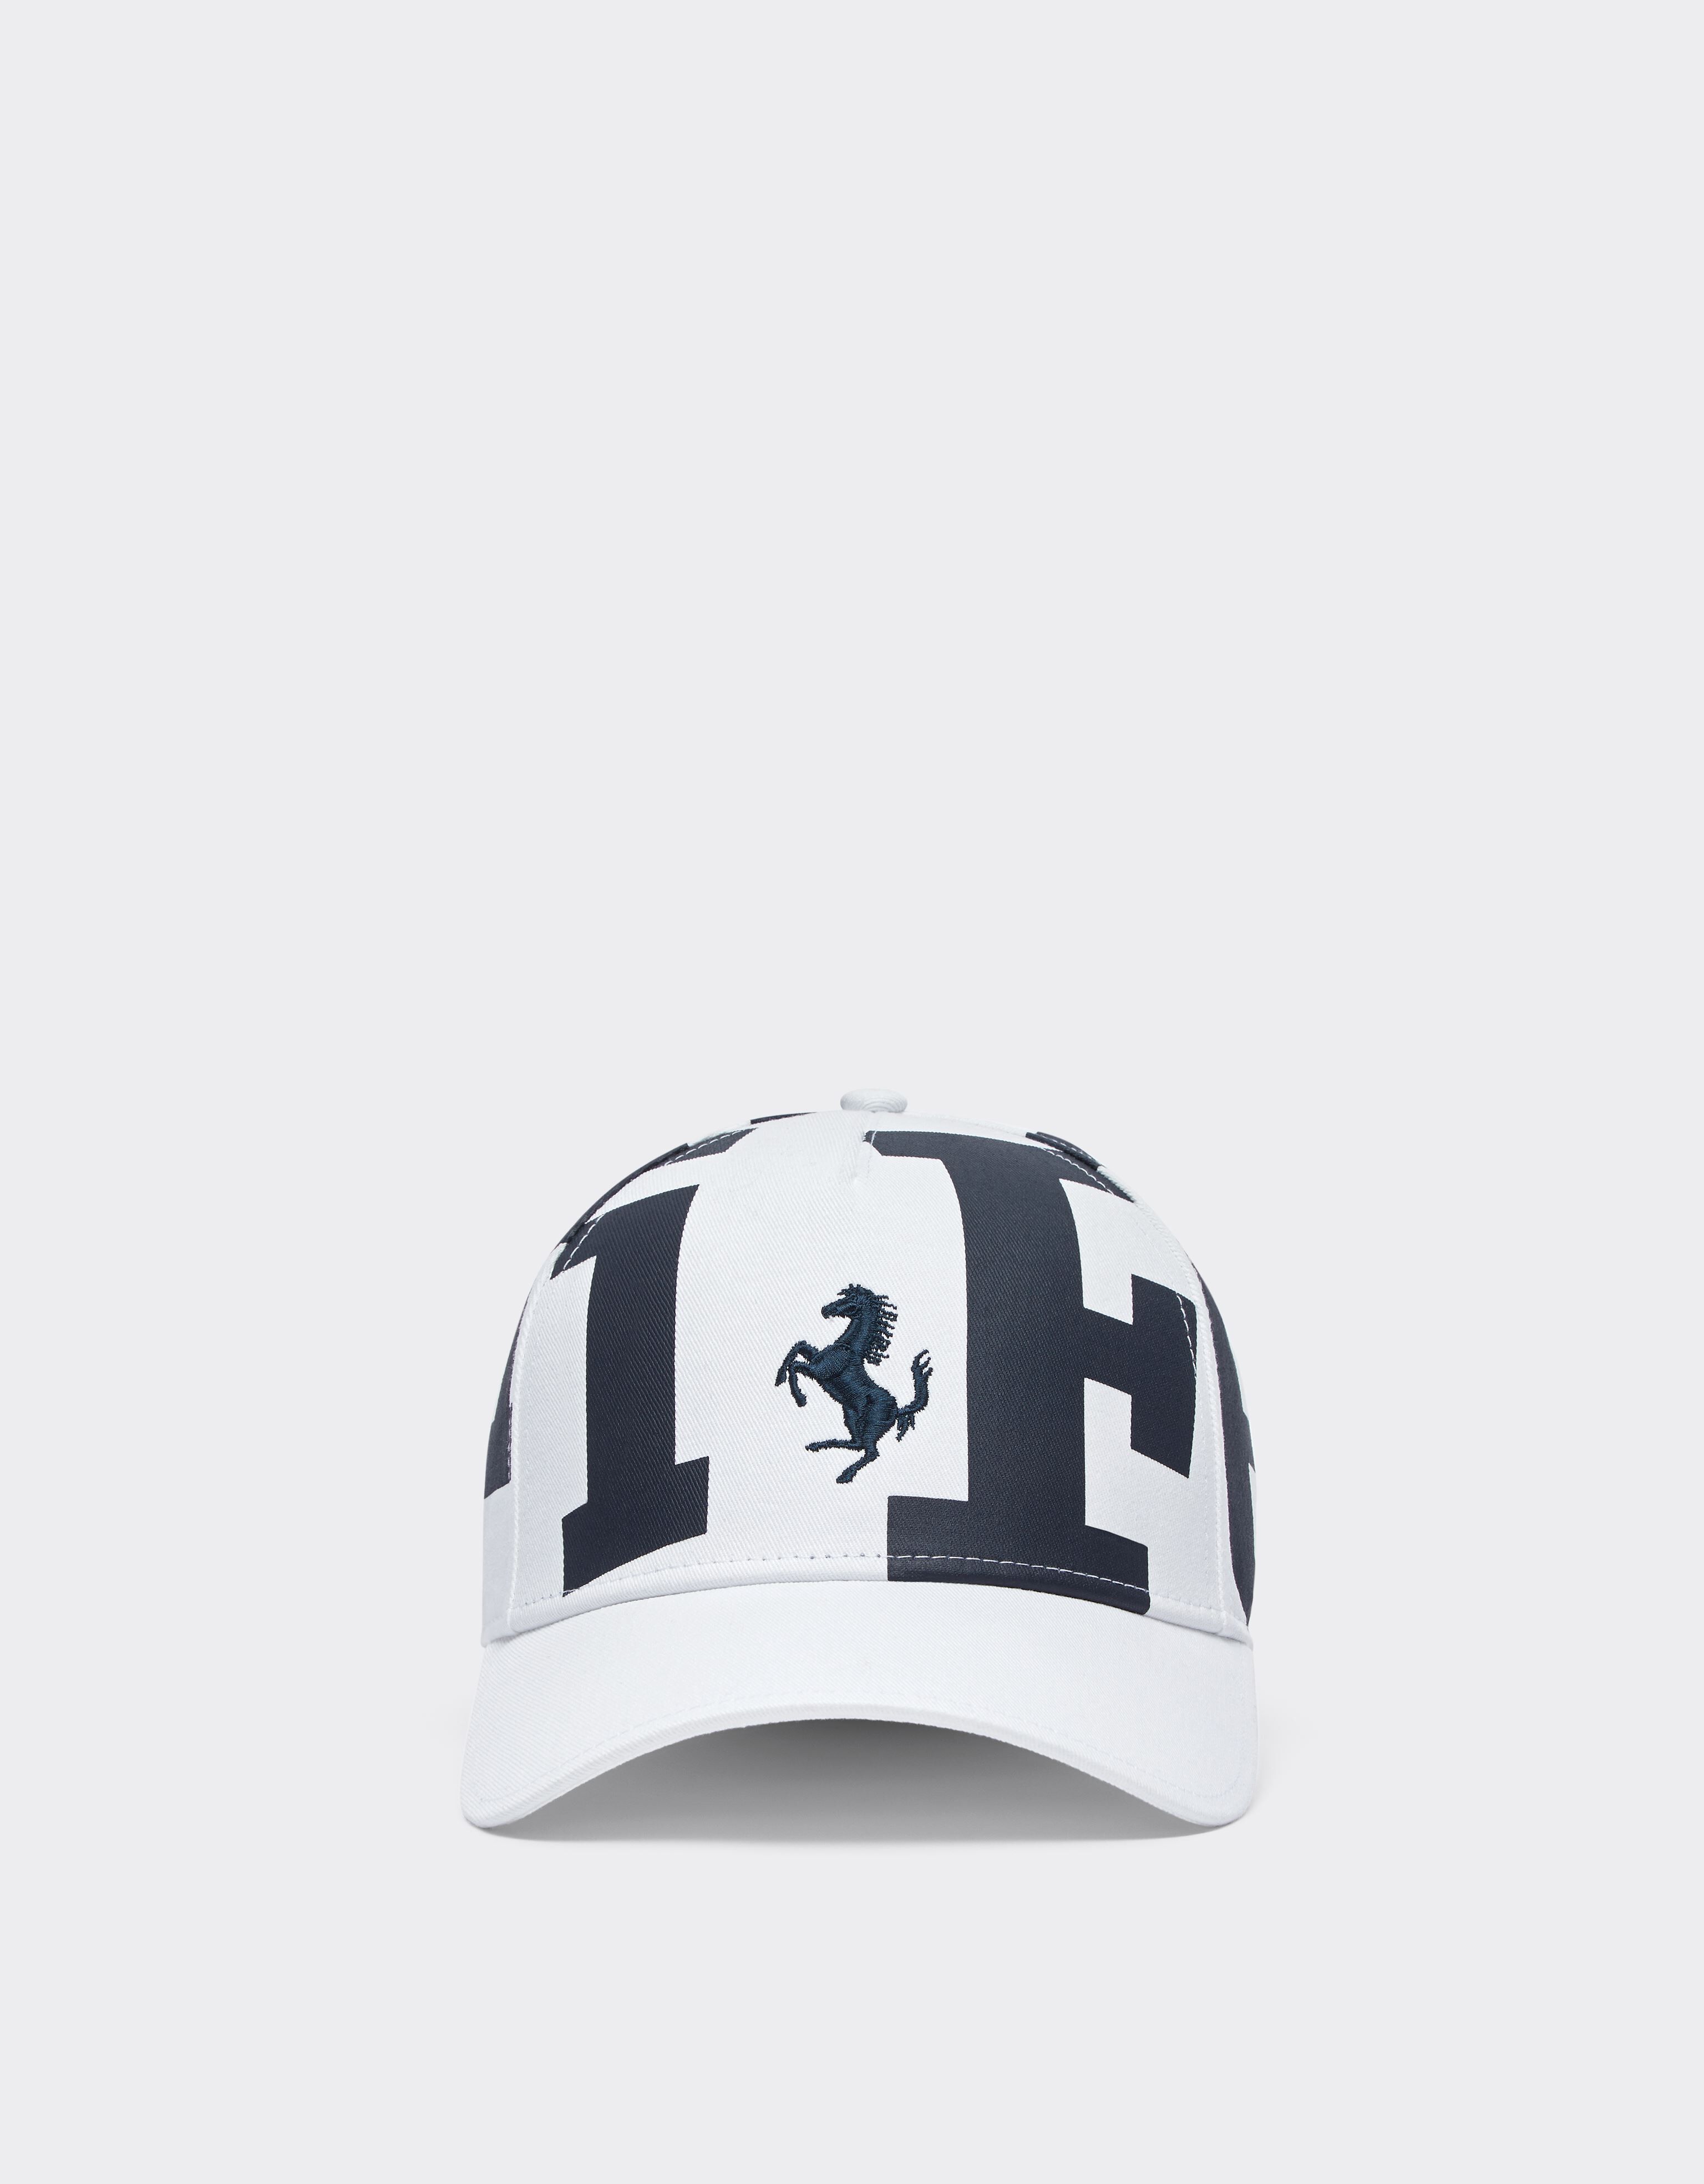 Ferrari Children’s cap with Ferrari logo 光学白 47096fK